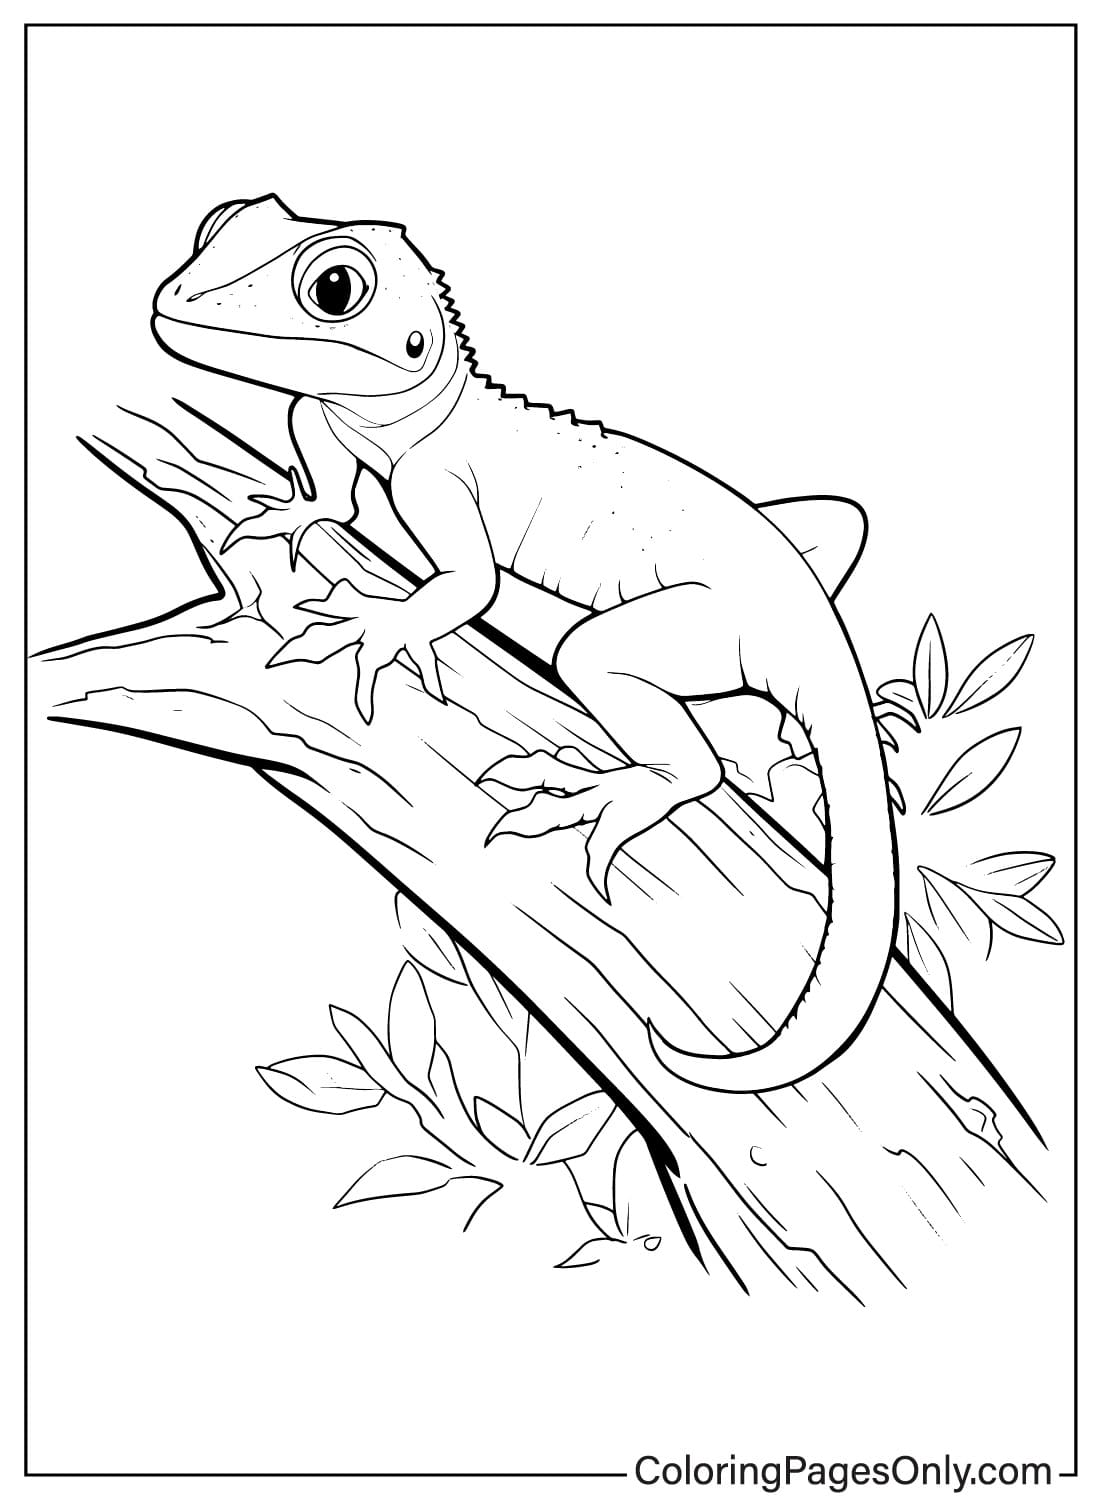 Página para colorir de lagarto para impressão da Lizard